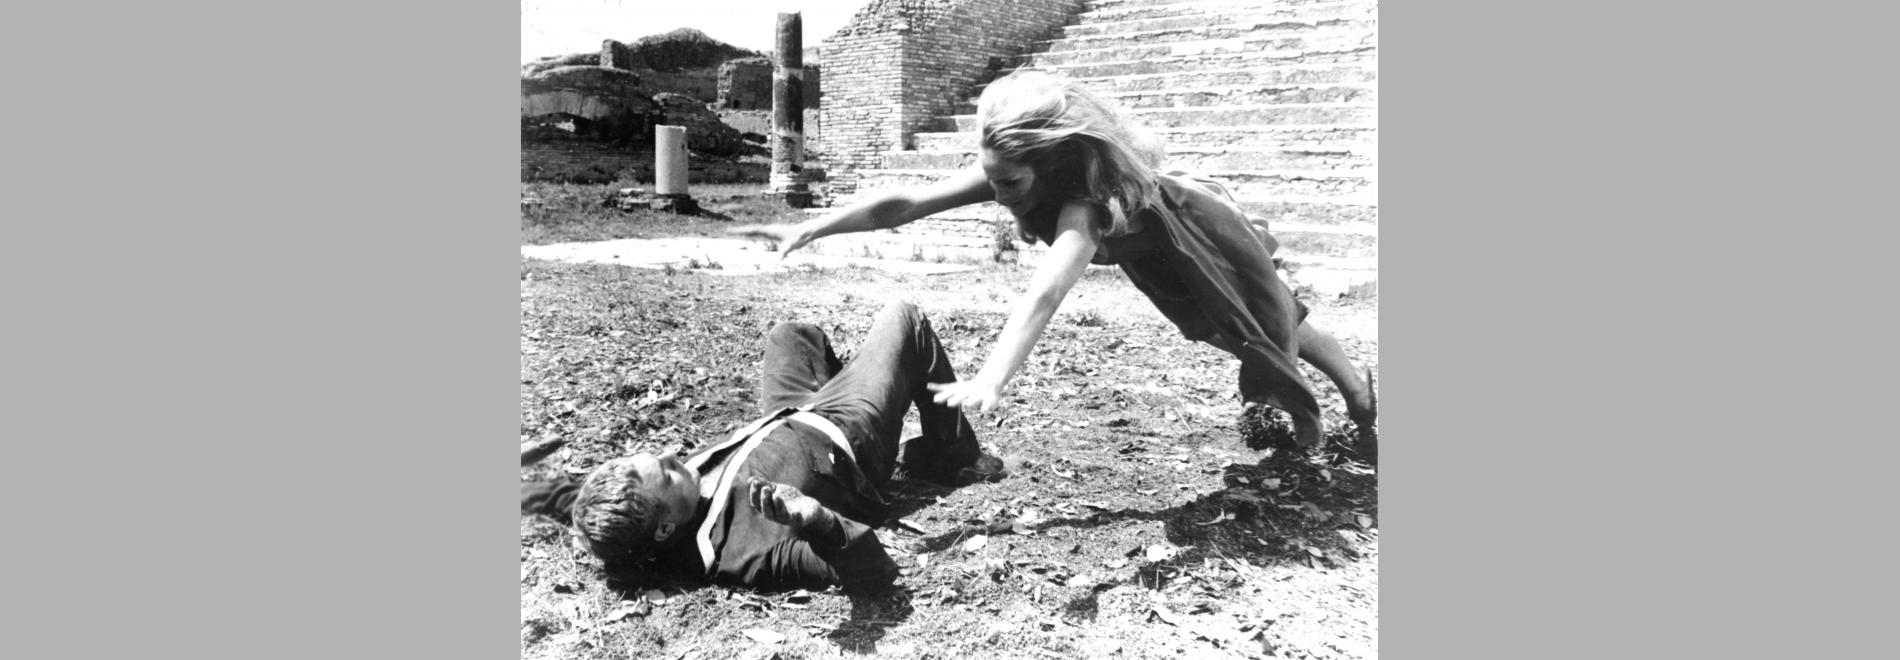 La decima vittima ´(Elio Petri, 1965)